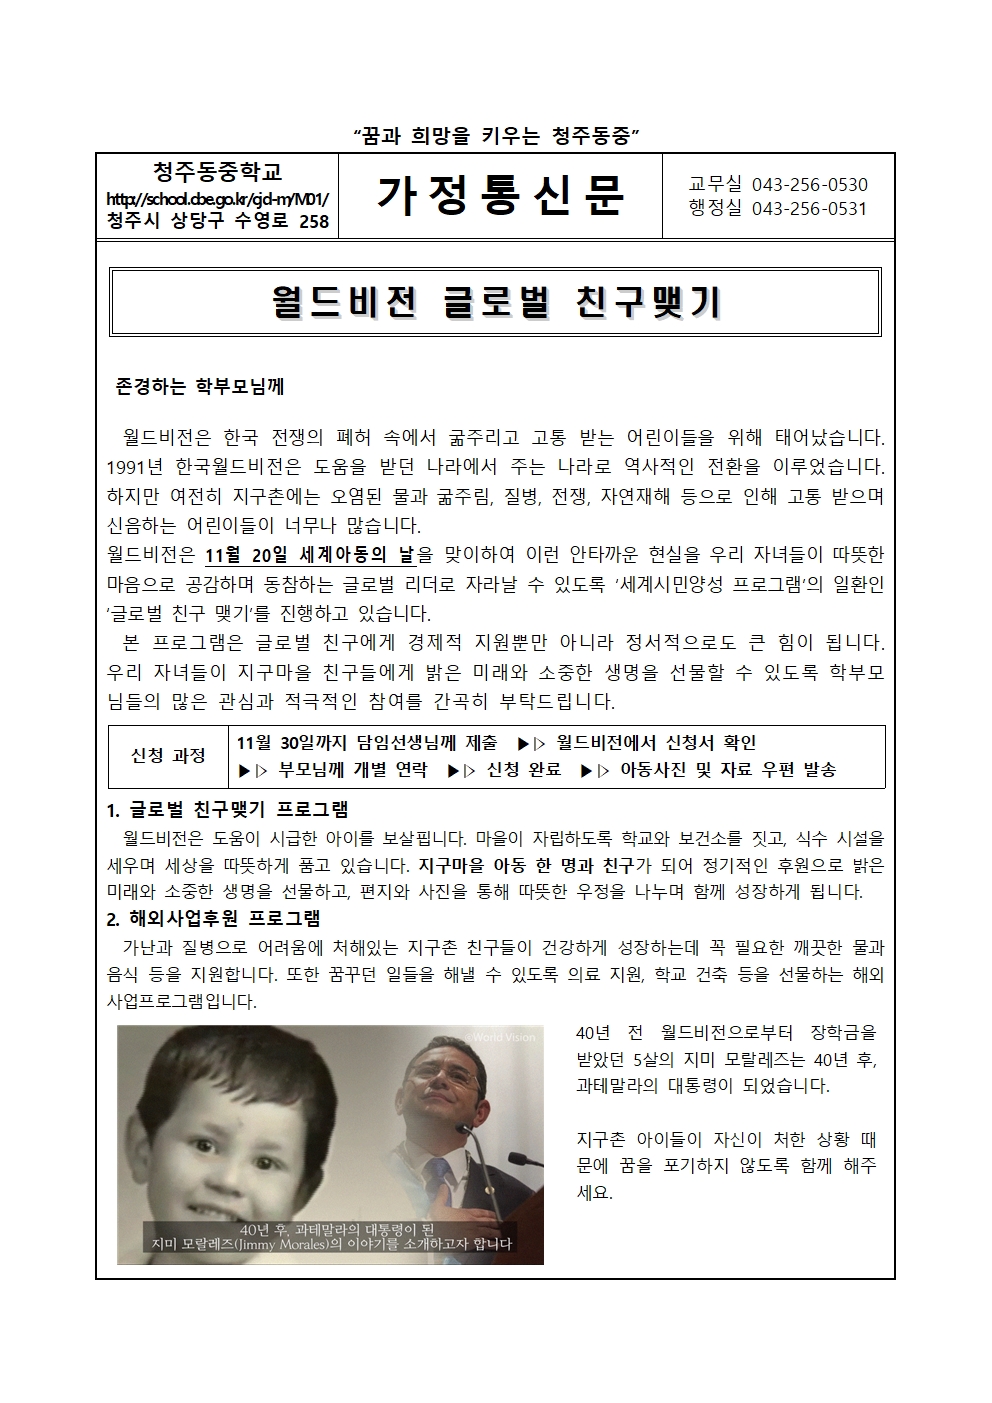 월드비전 글로벌 친구맺기 안내 가정통신문001